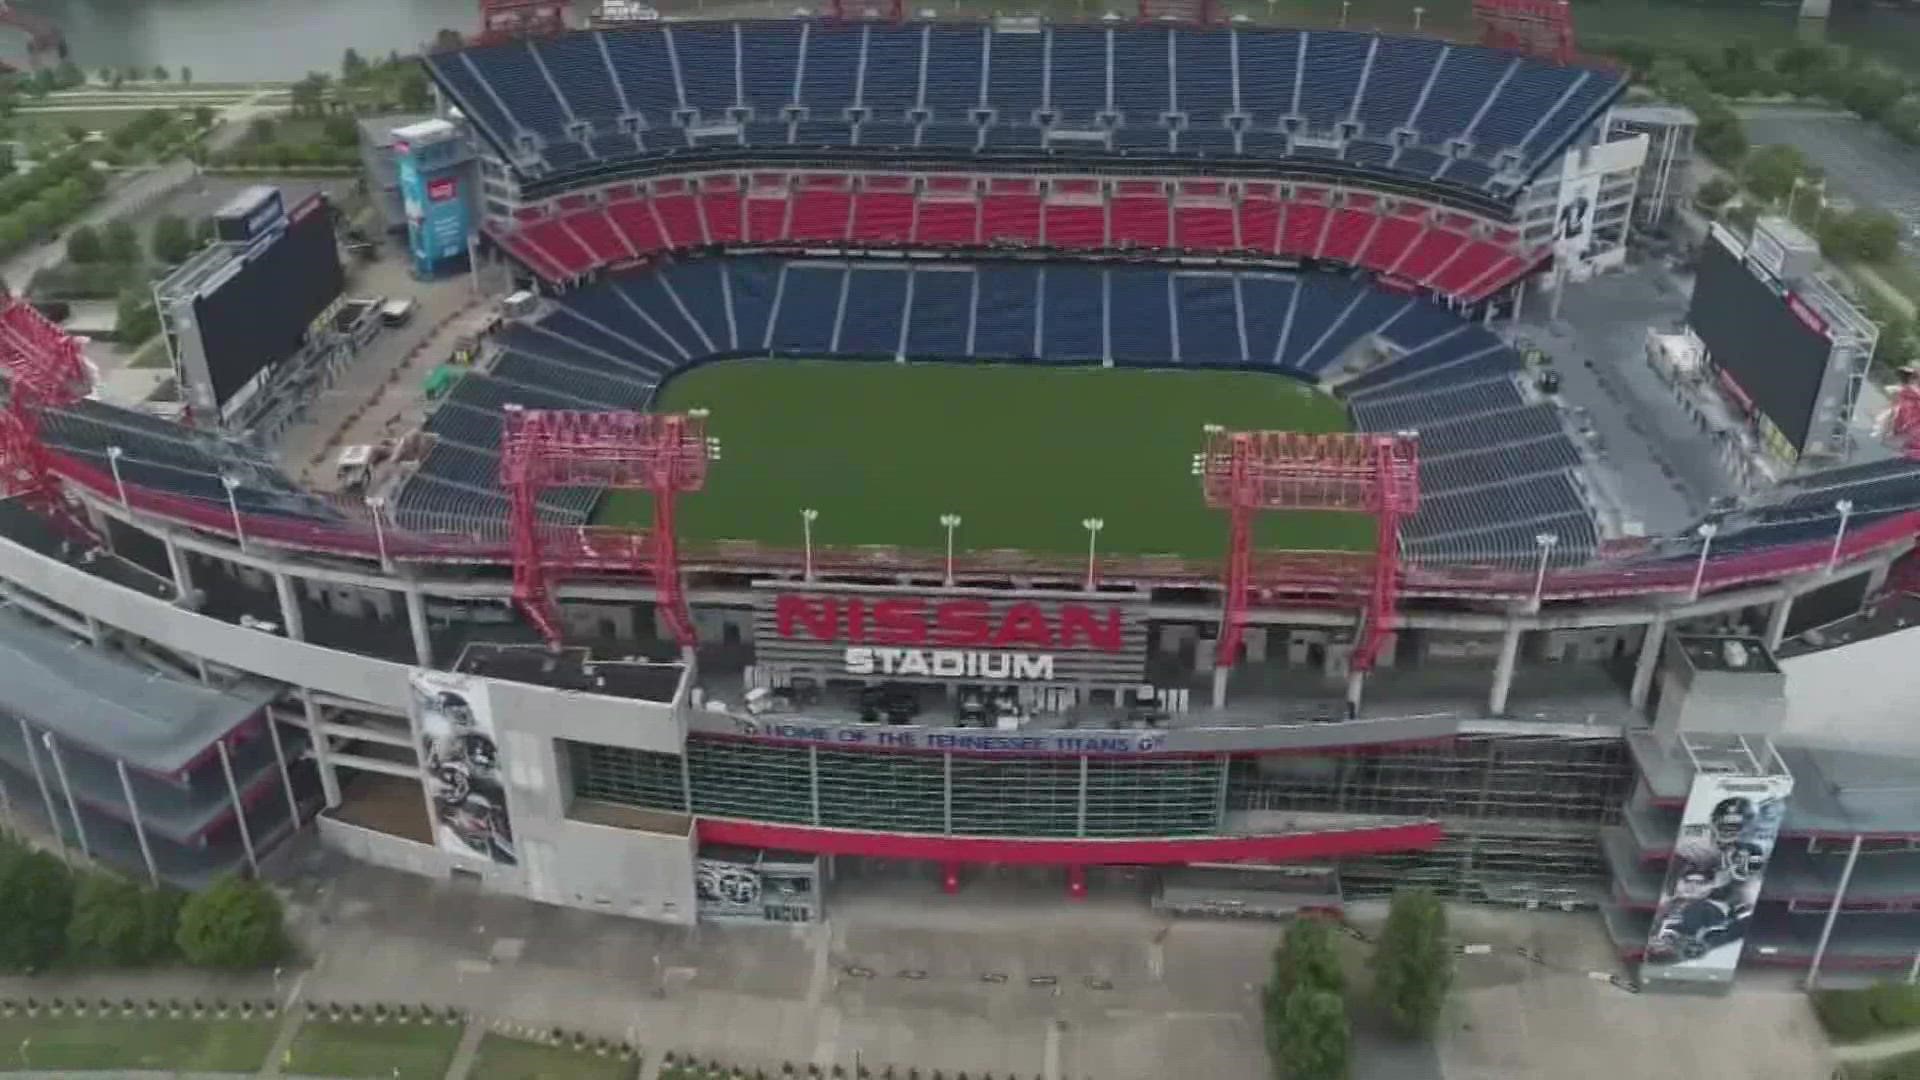 new titan stadium